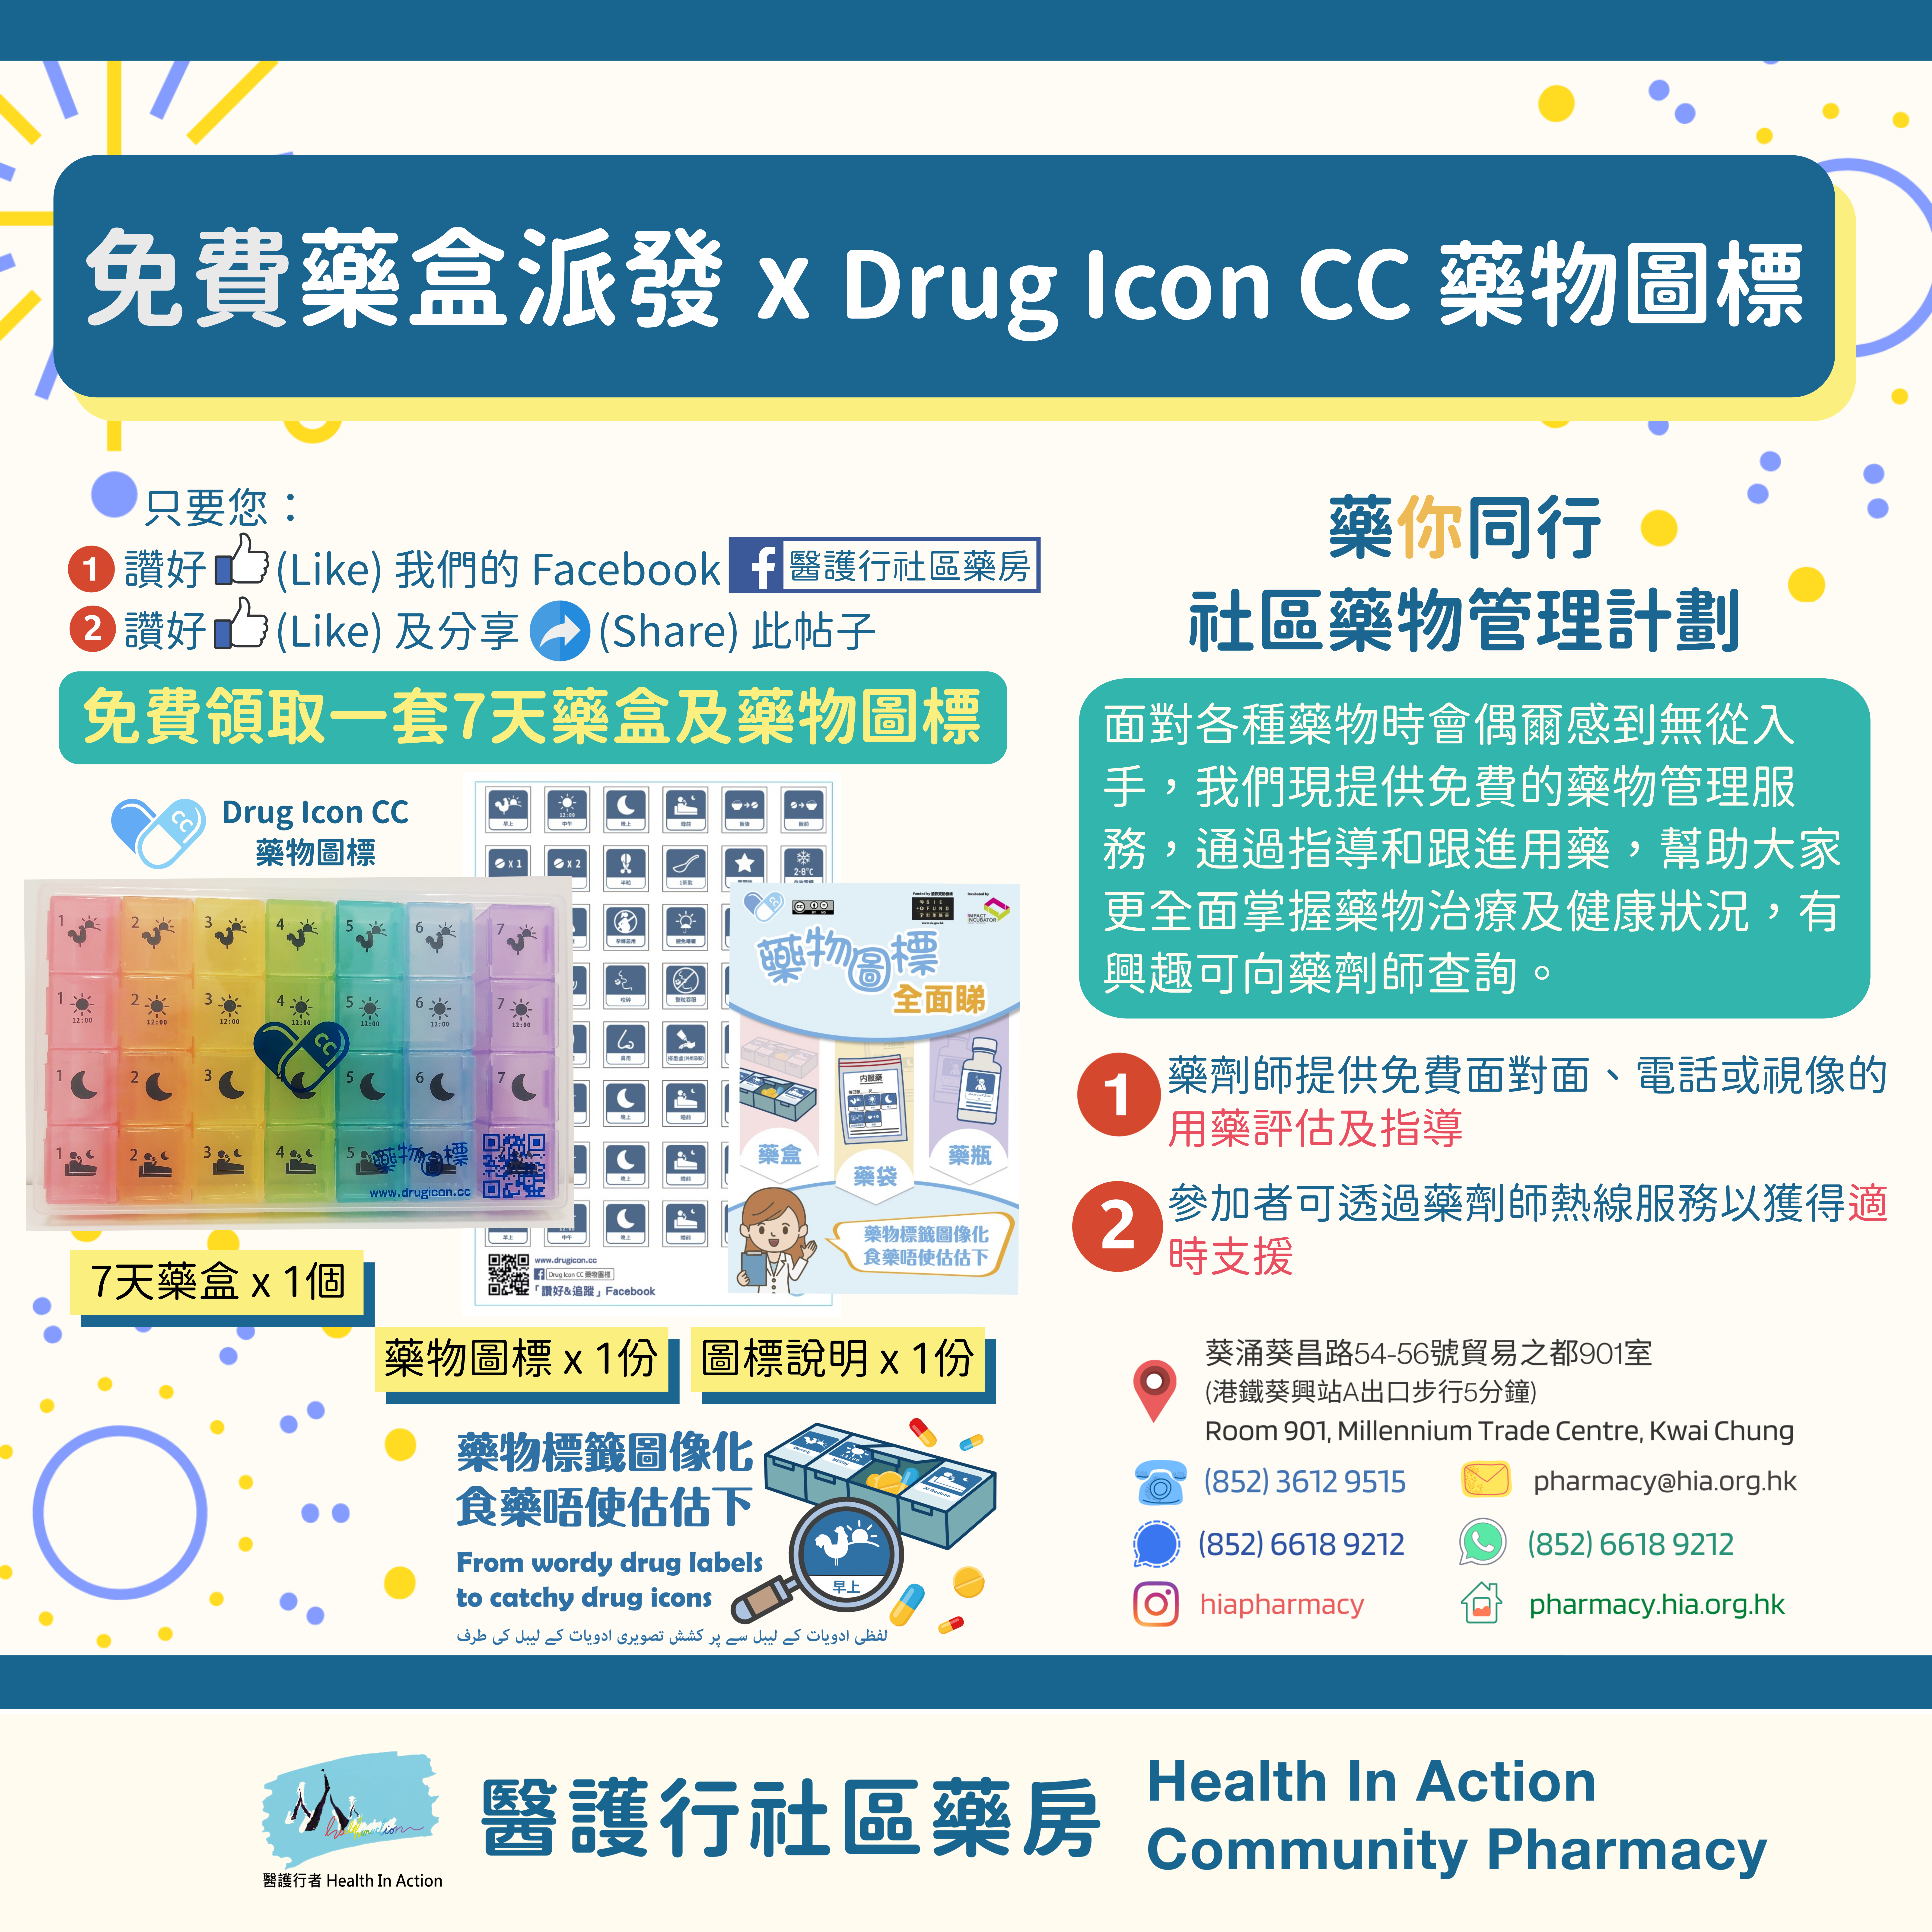 Free Pill Box Distribution x Drug Icon CC